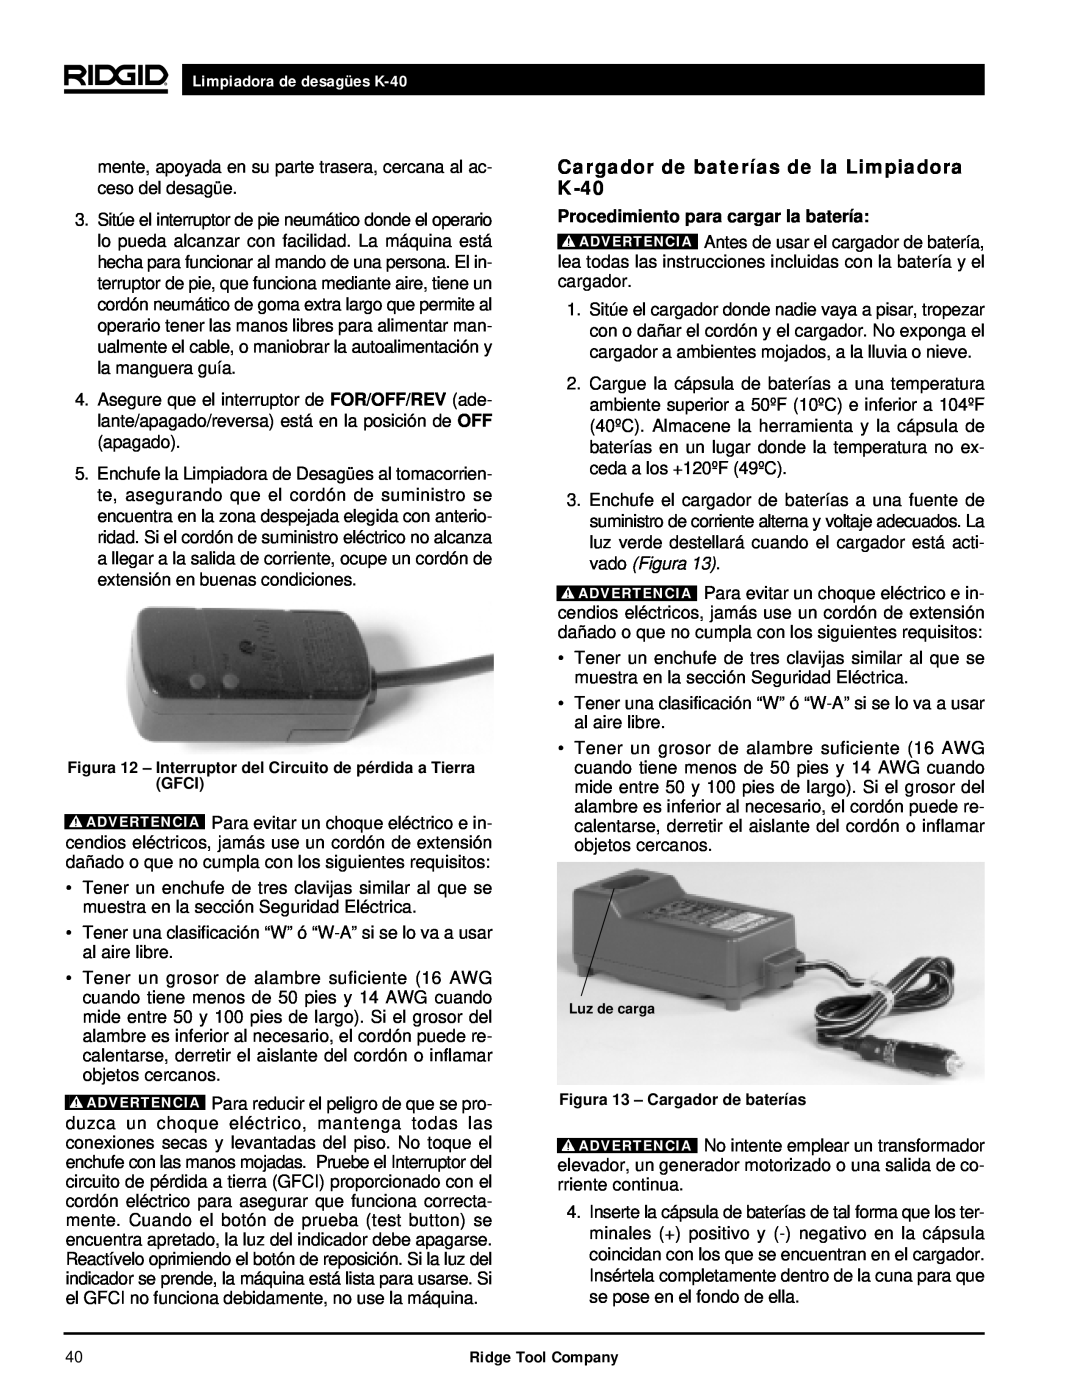 RIDGID Cargador de baterías de la Limpiadora K-40, Limpiadora de desagües K-40, Procedimiento para cargar la batería 